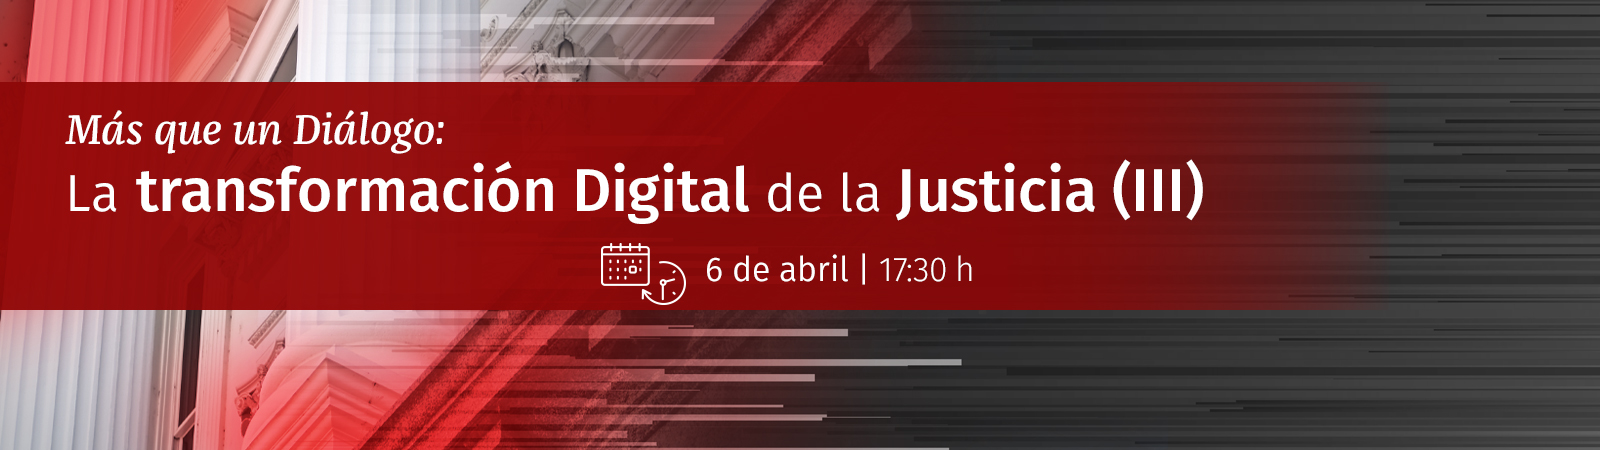 Más que un Diálogo: La transformación Digital de la Justicia 